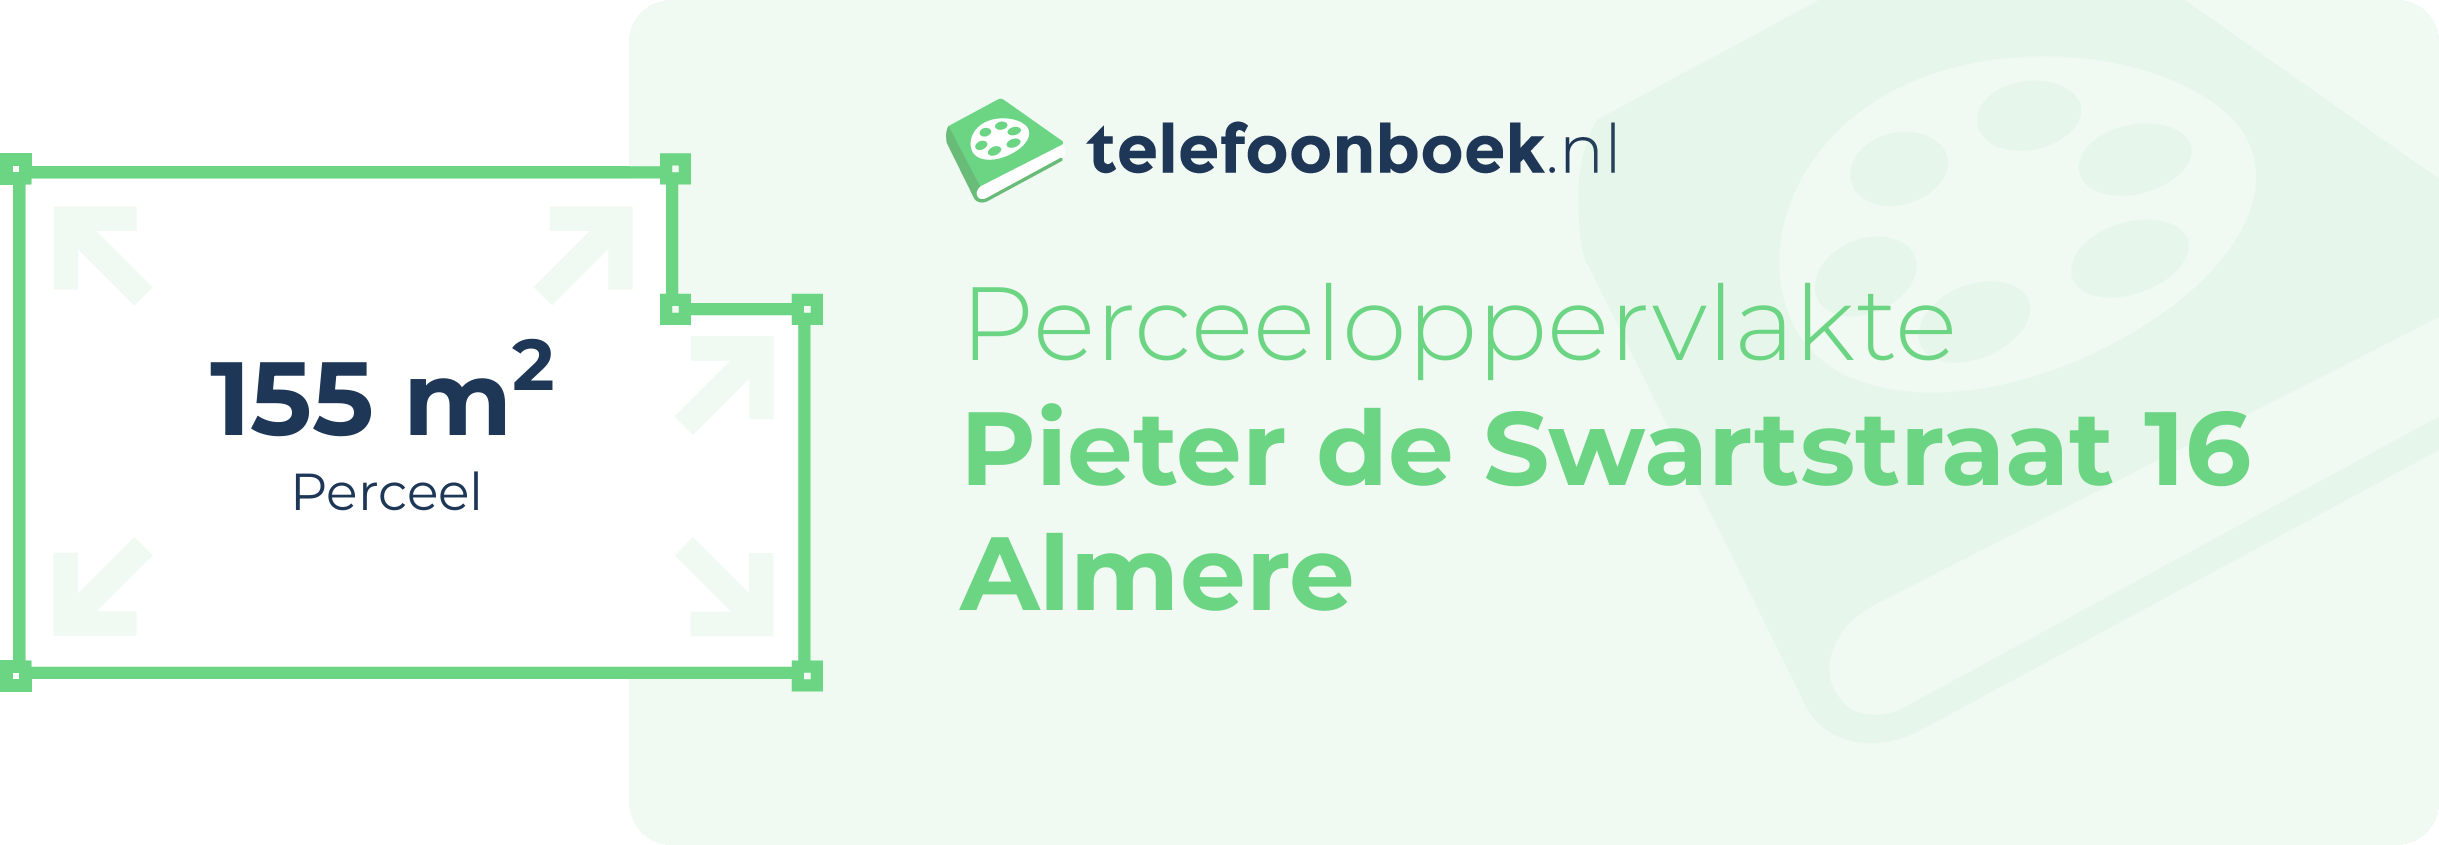 Perceeloppervlakte Pieter De Swartstraat 16 Almere